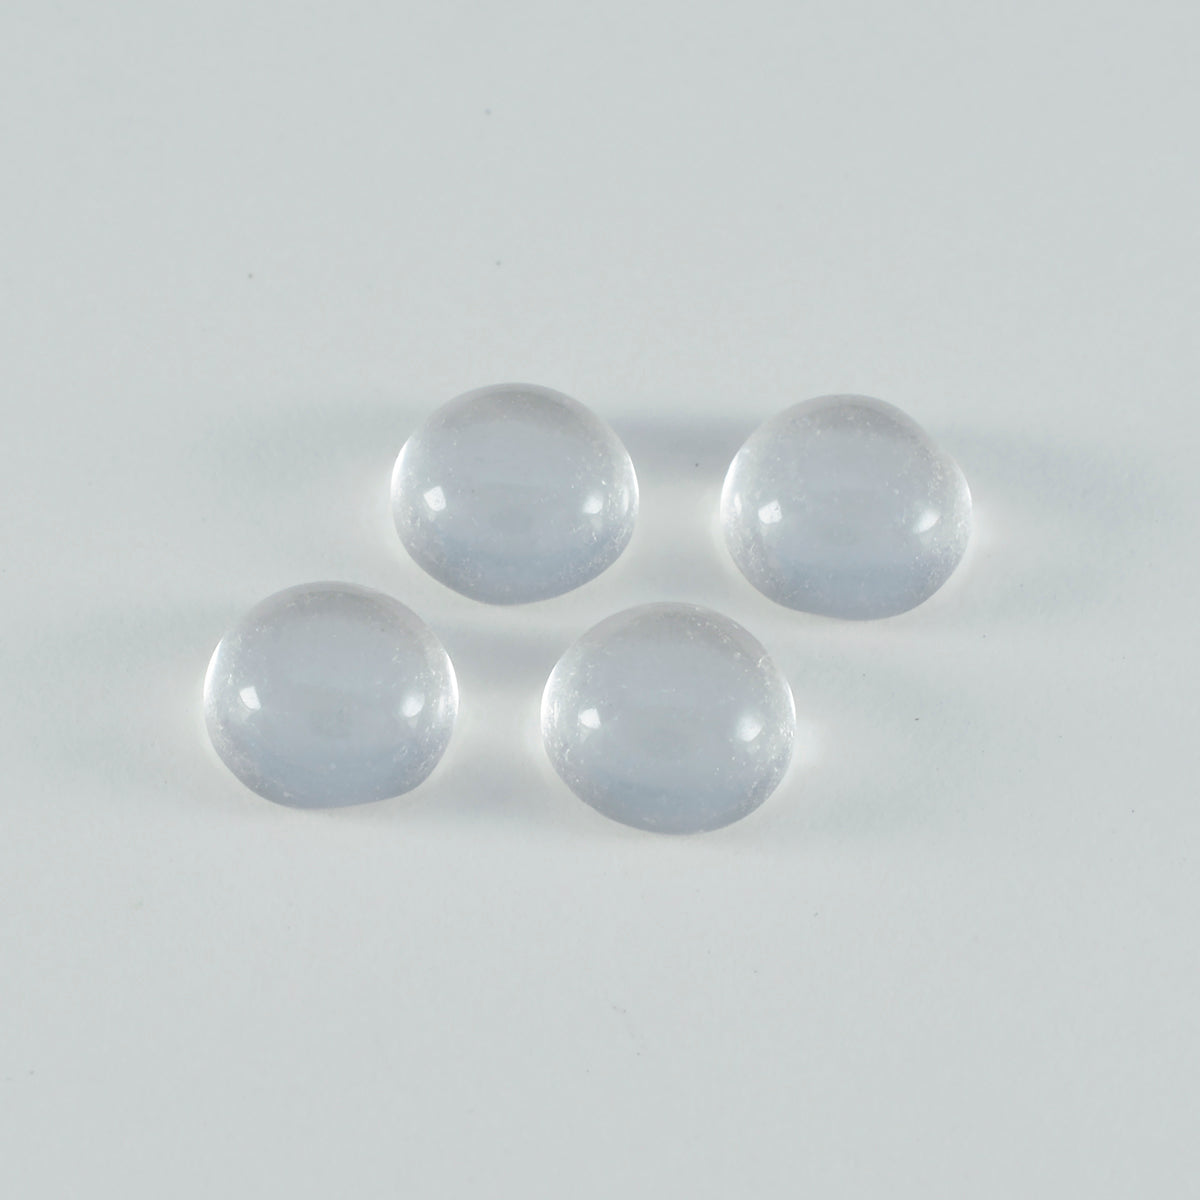 Riyogems 1pc cabochon de quartz en cristal blanc 6x6 mm forme ronde a + qualité pierre précieuse en vrac